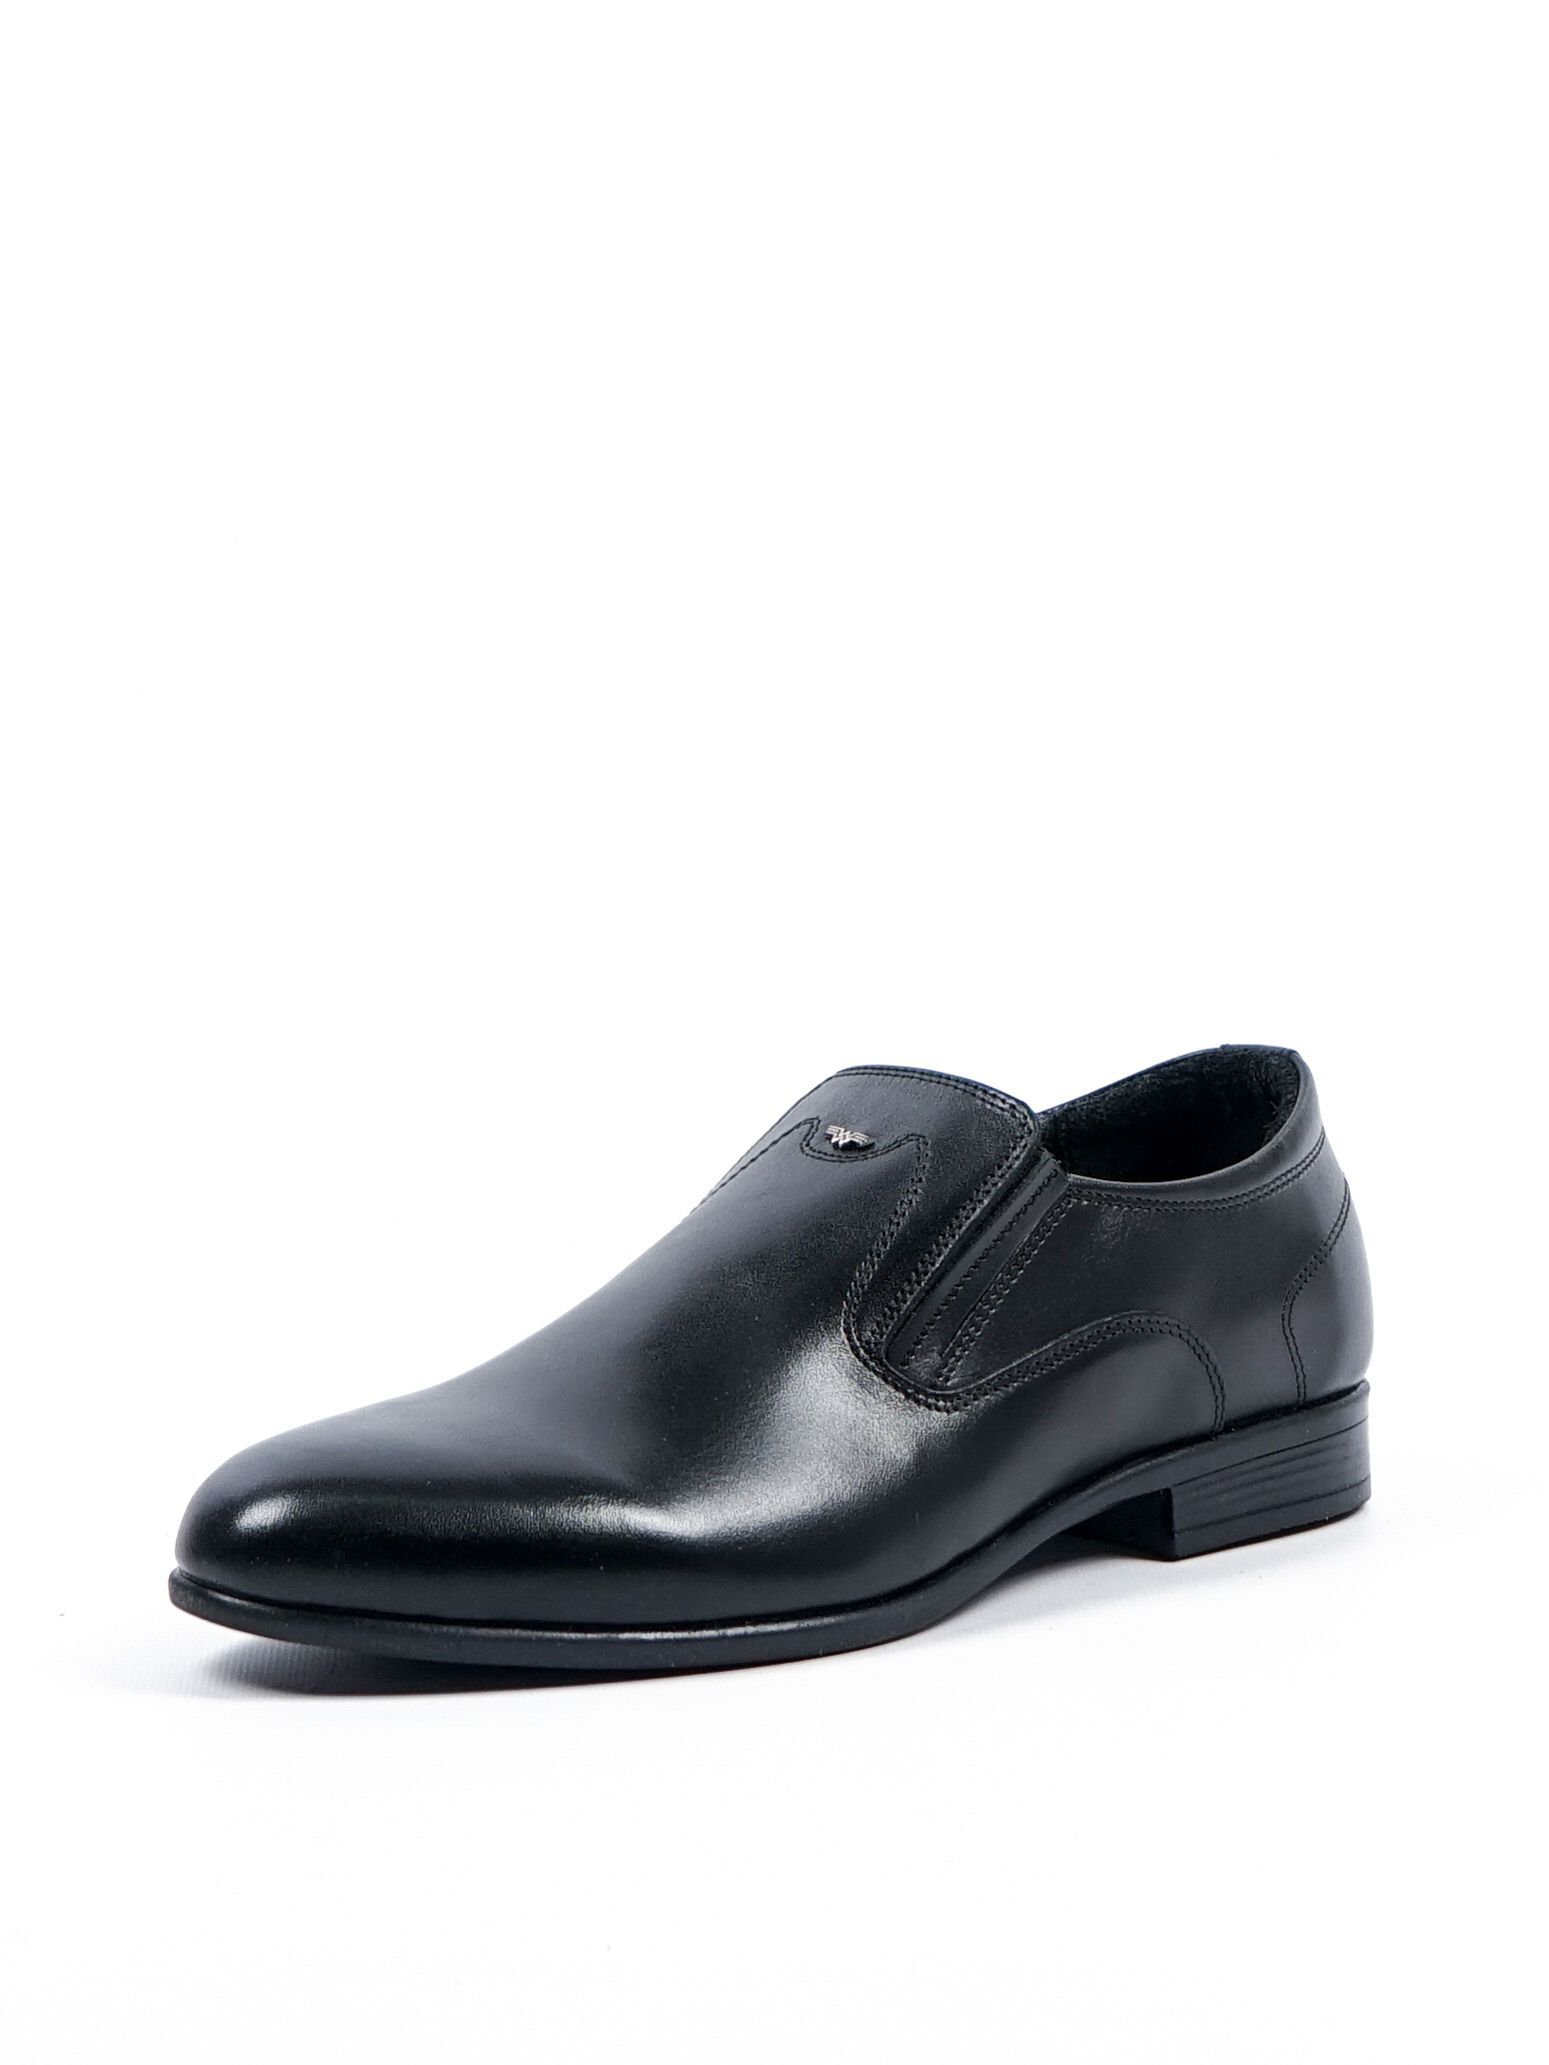 Туфли мужские Comfort Shoes 1098 черные 42 RU